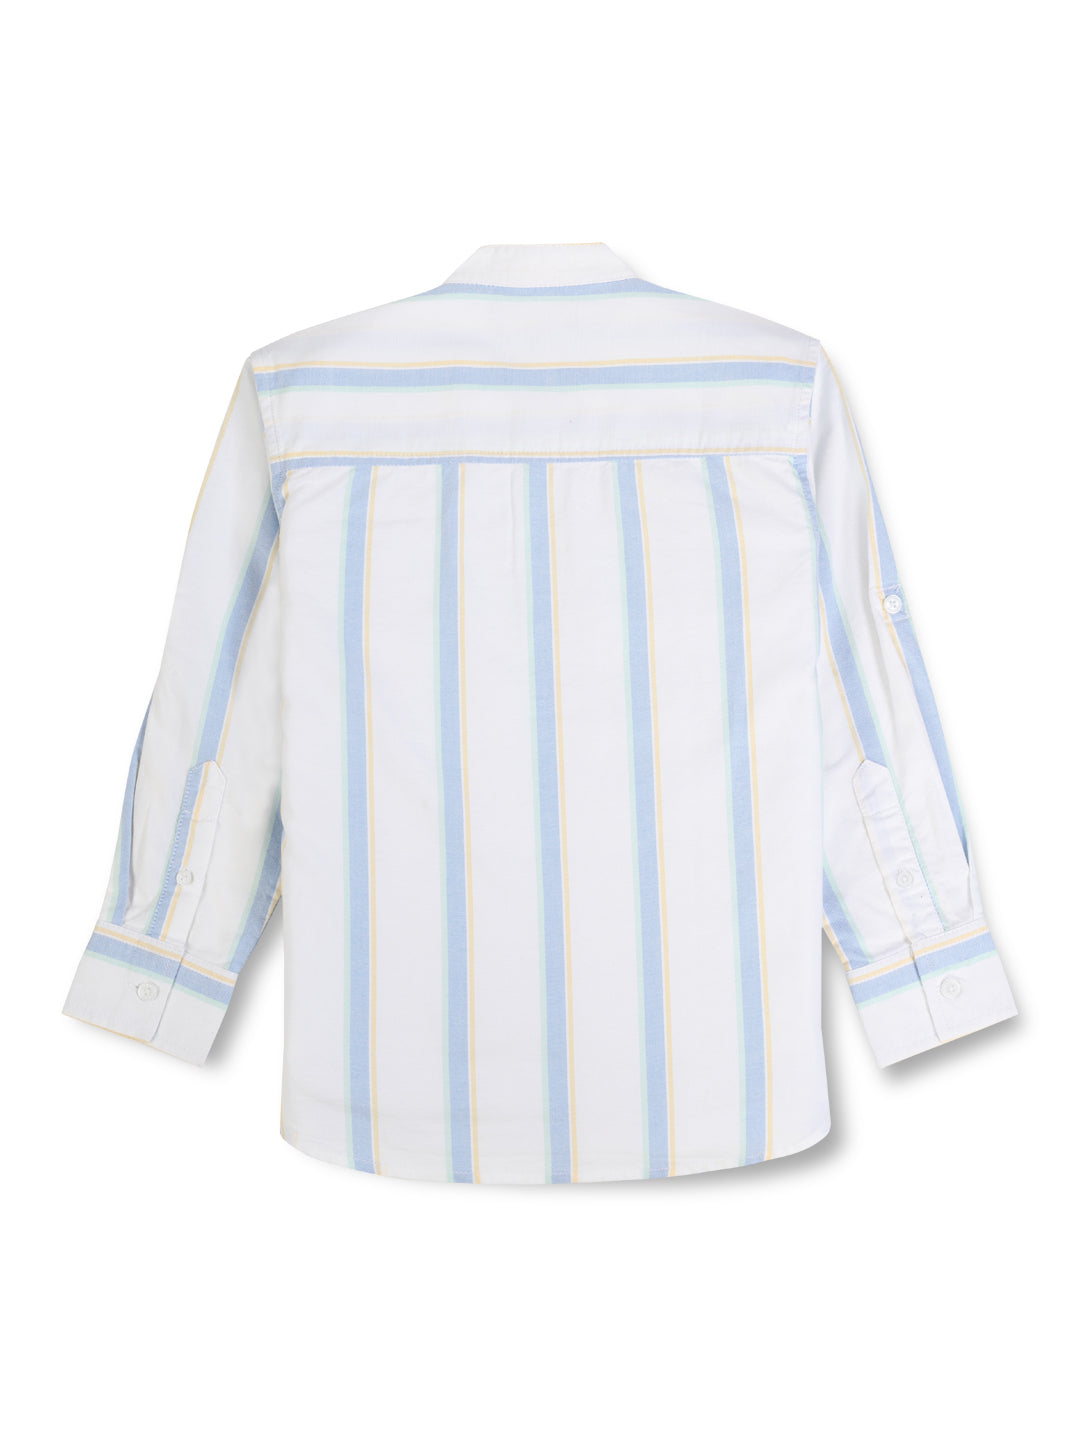 Boys white woven striped full sleeve shirt